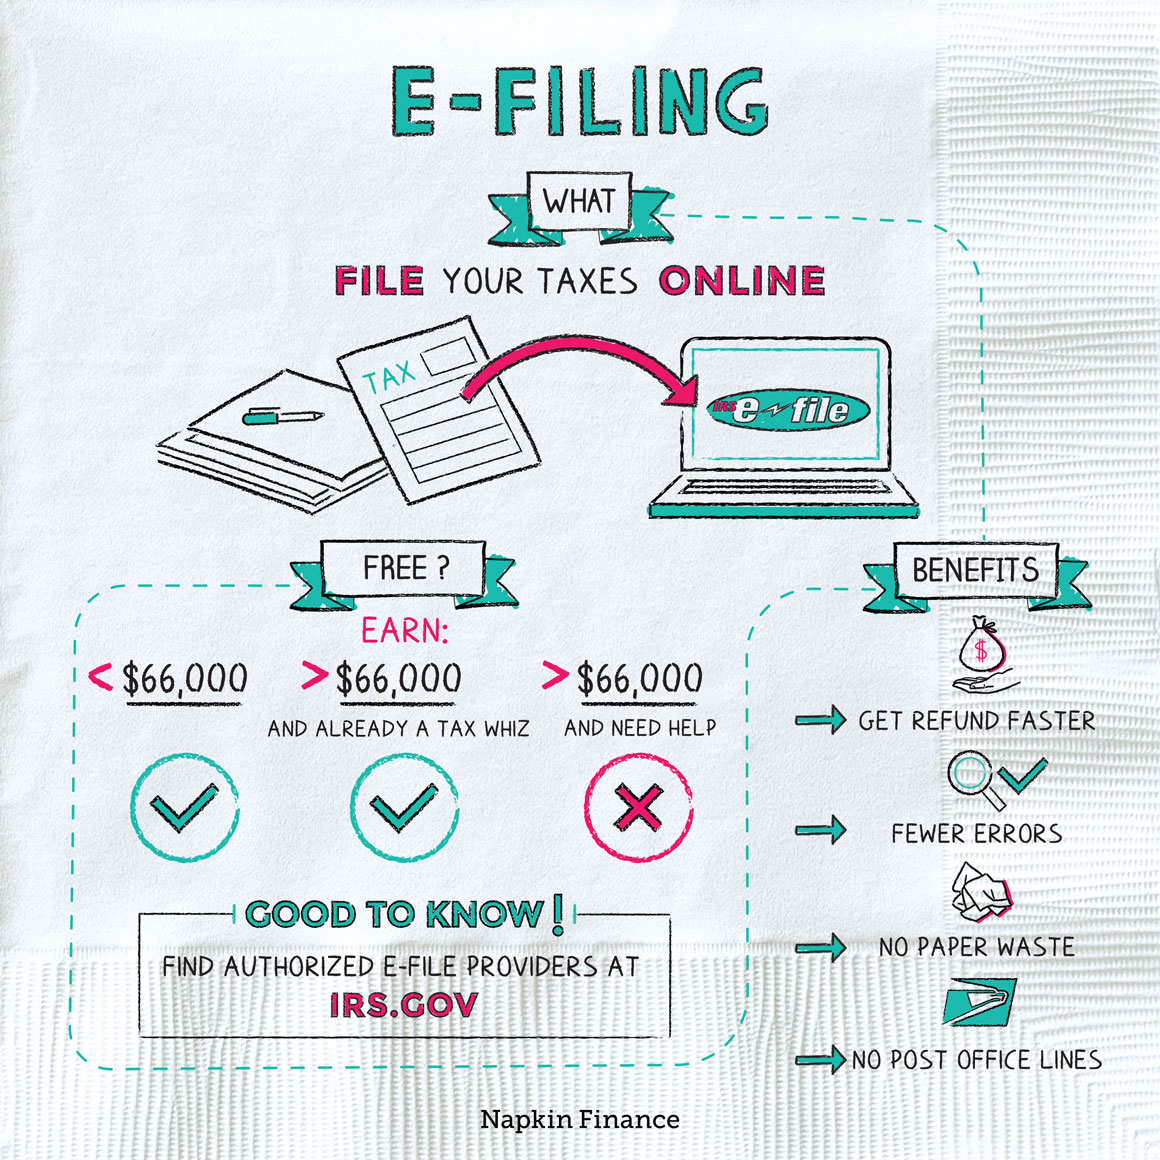 E-Filing